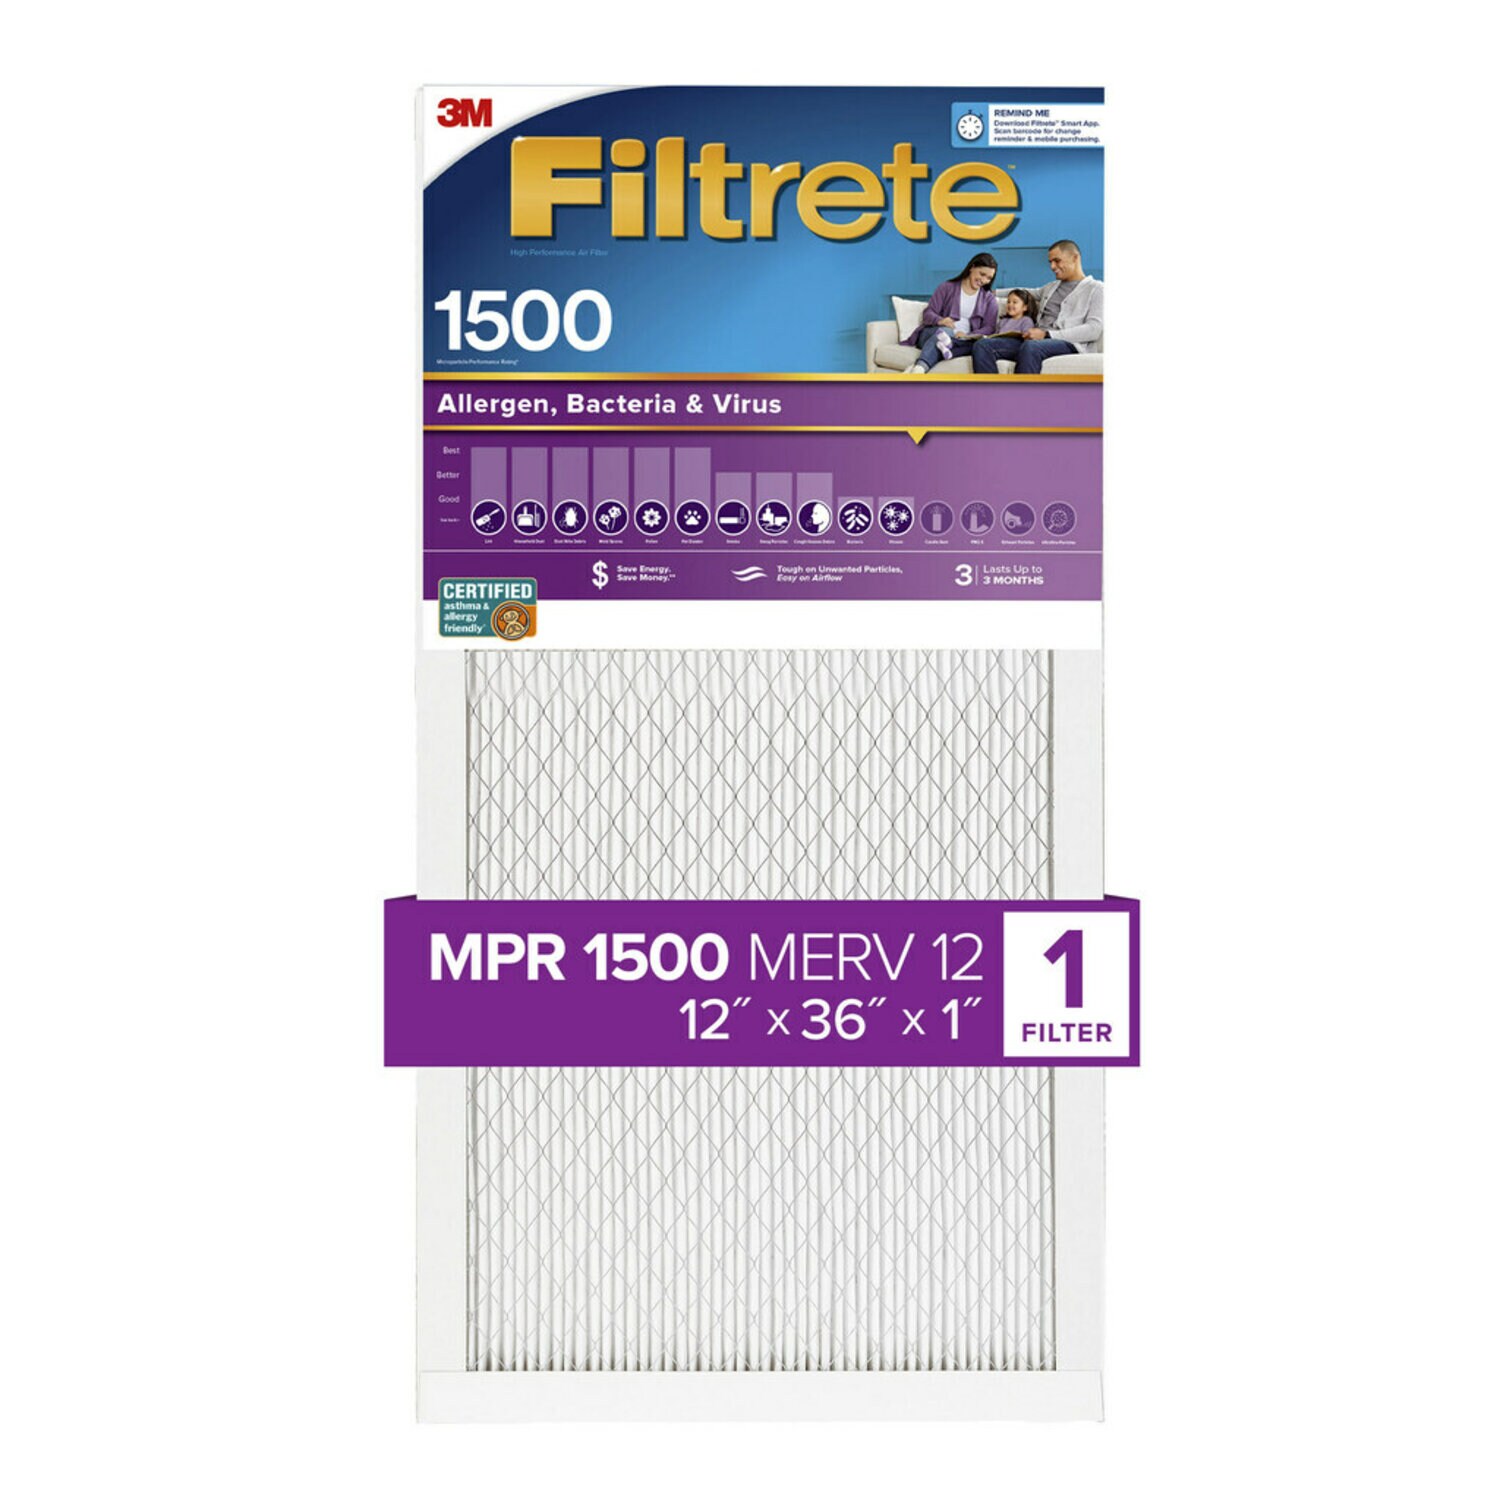 7100264709 - Filtrete High Performance Air Filter 1500 MPR 2014DC-4, 12 in x 36 in x 1 in (30.4 cm x 91.4 cm x 2.5 cm)